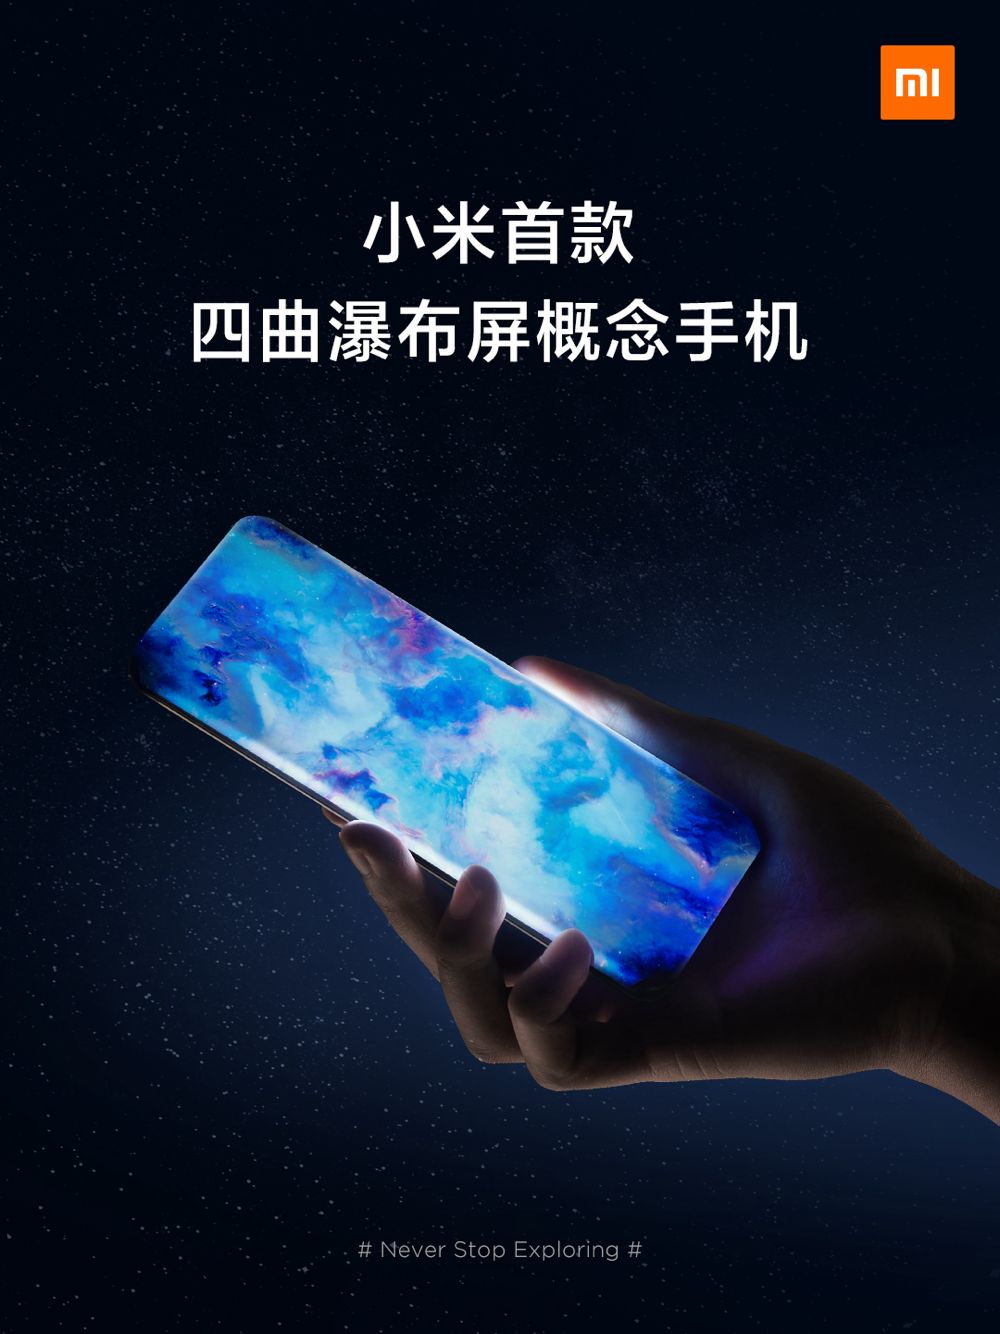 小米发布首款四曲瀑布屏概念手机 探索未来无孔化手机